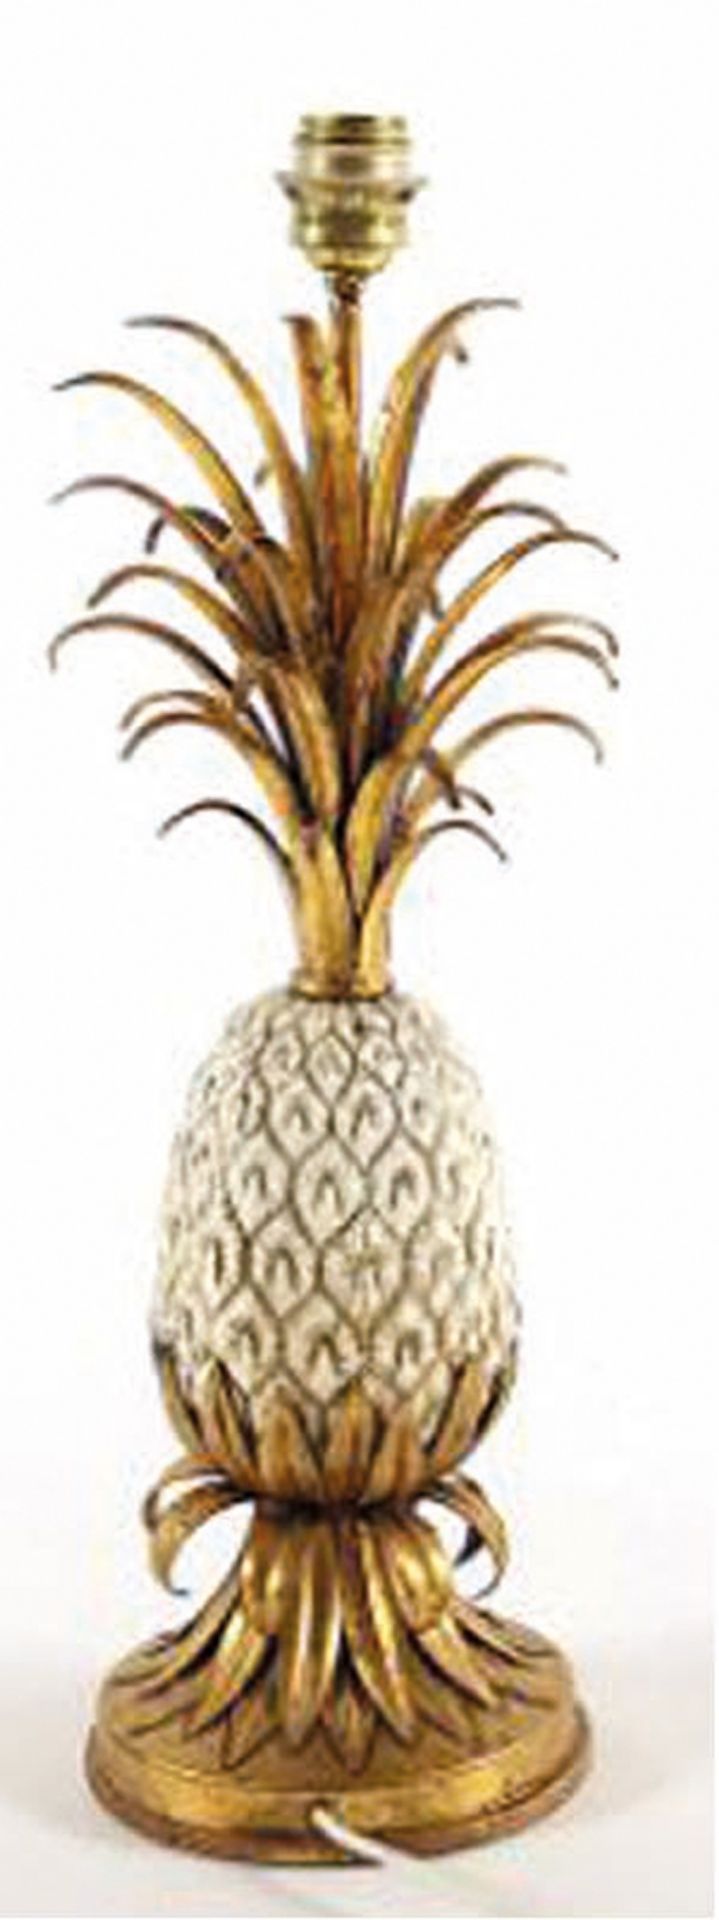 Ananas-Tischlampe, in der Art von Maison Charles, Messing/Metall, vergoldet bzw. weiß lackiert, ein - Bild 2 aus 2